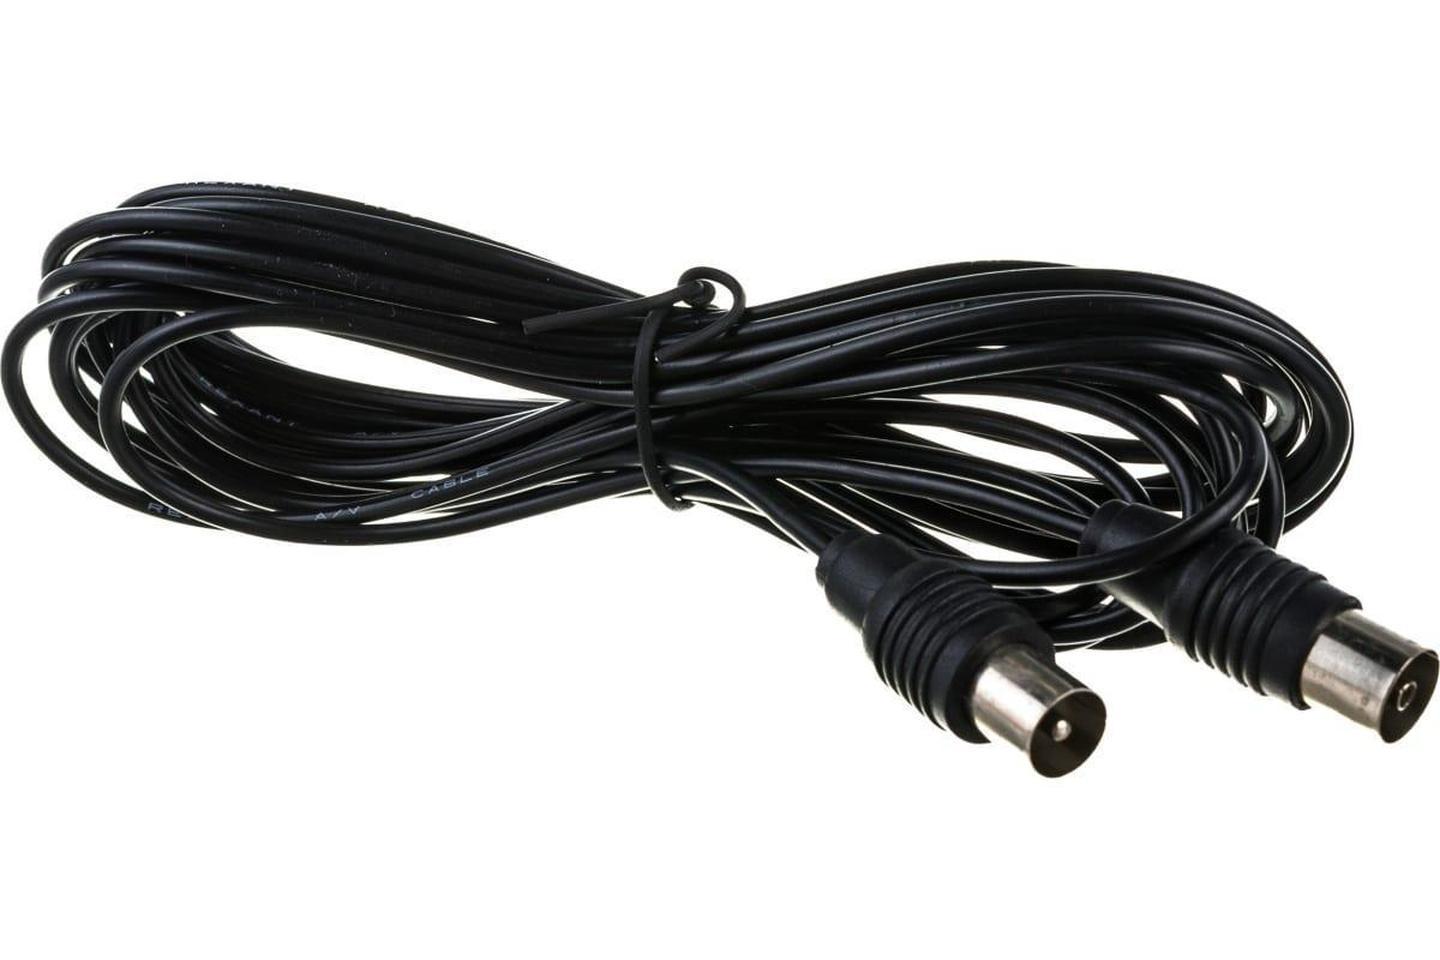 17-5027, ВЧ кабель ТВ штекер - ТВ штекер, длина 15 метров, черный